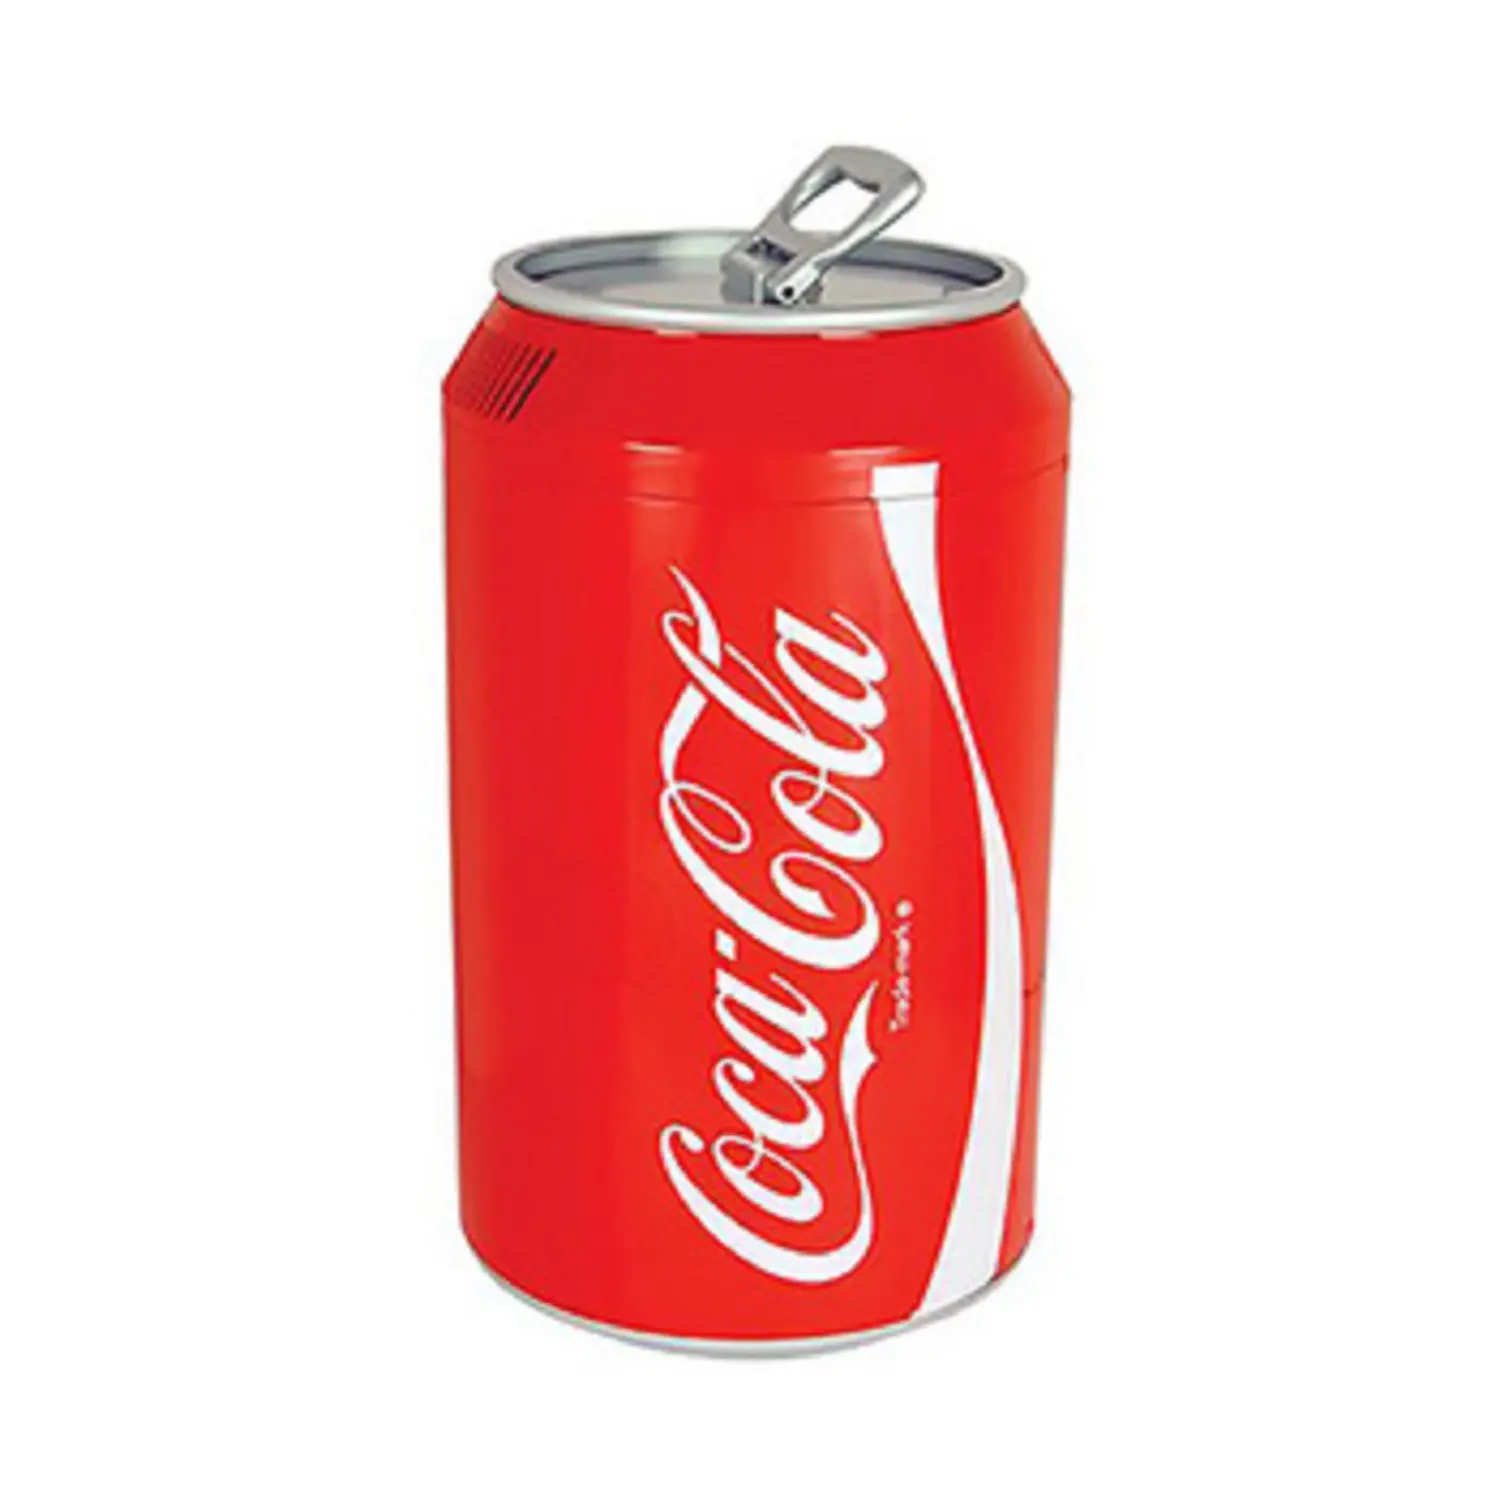 Coca cola soft drink 330 ml / Coca cola 33 cl can